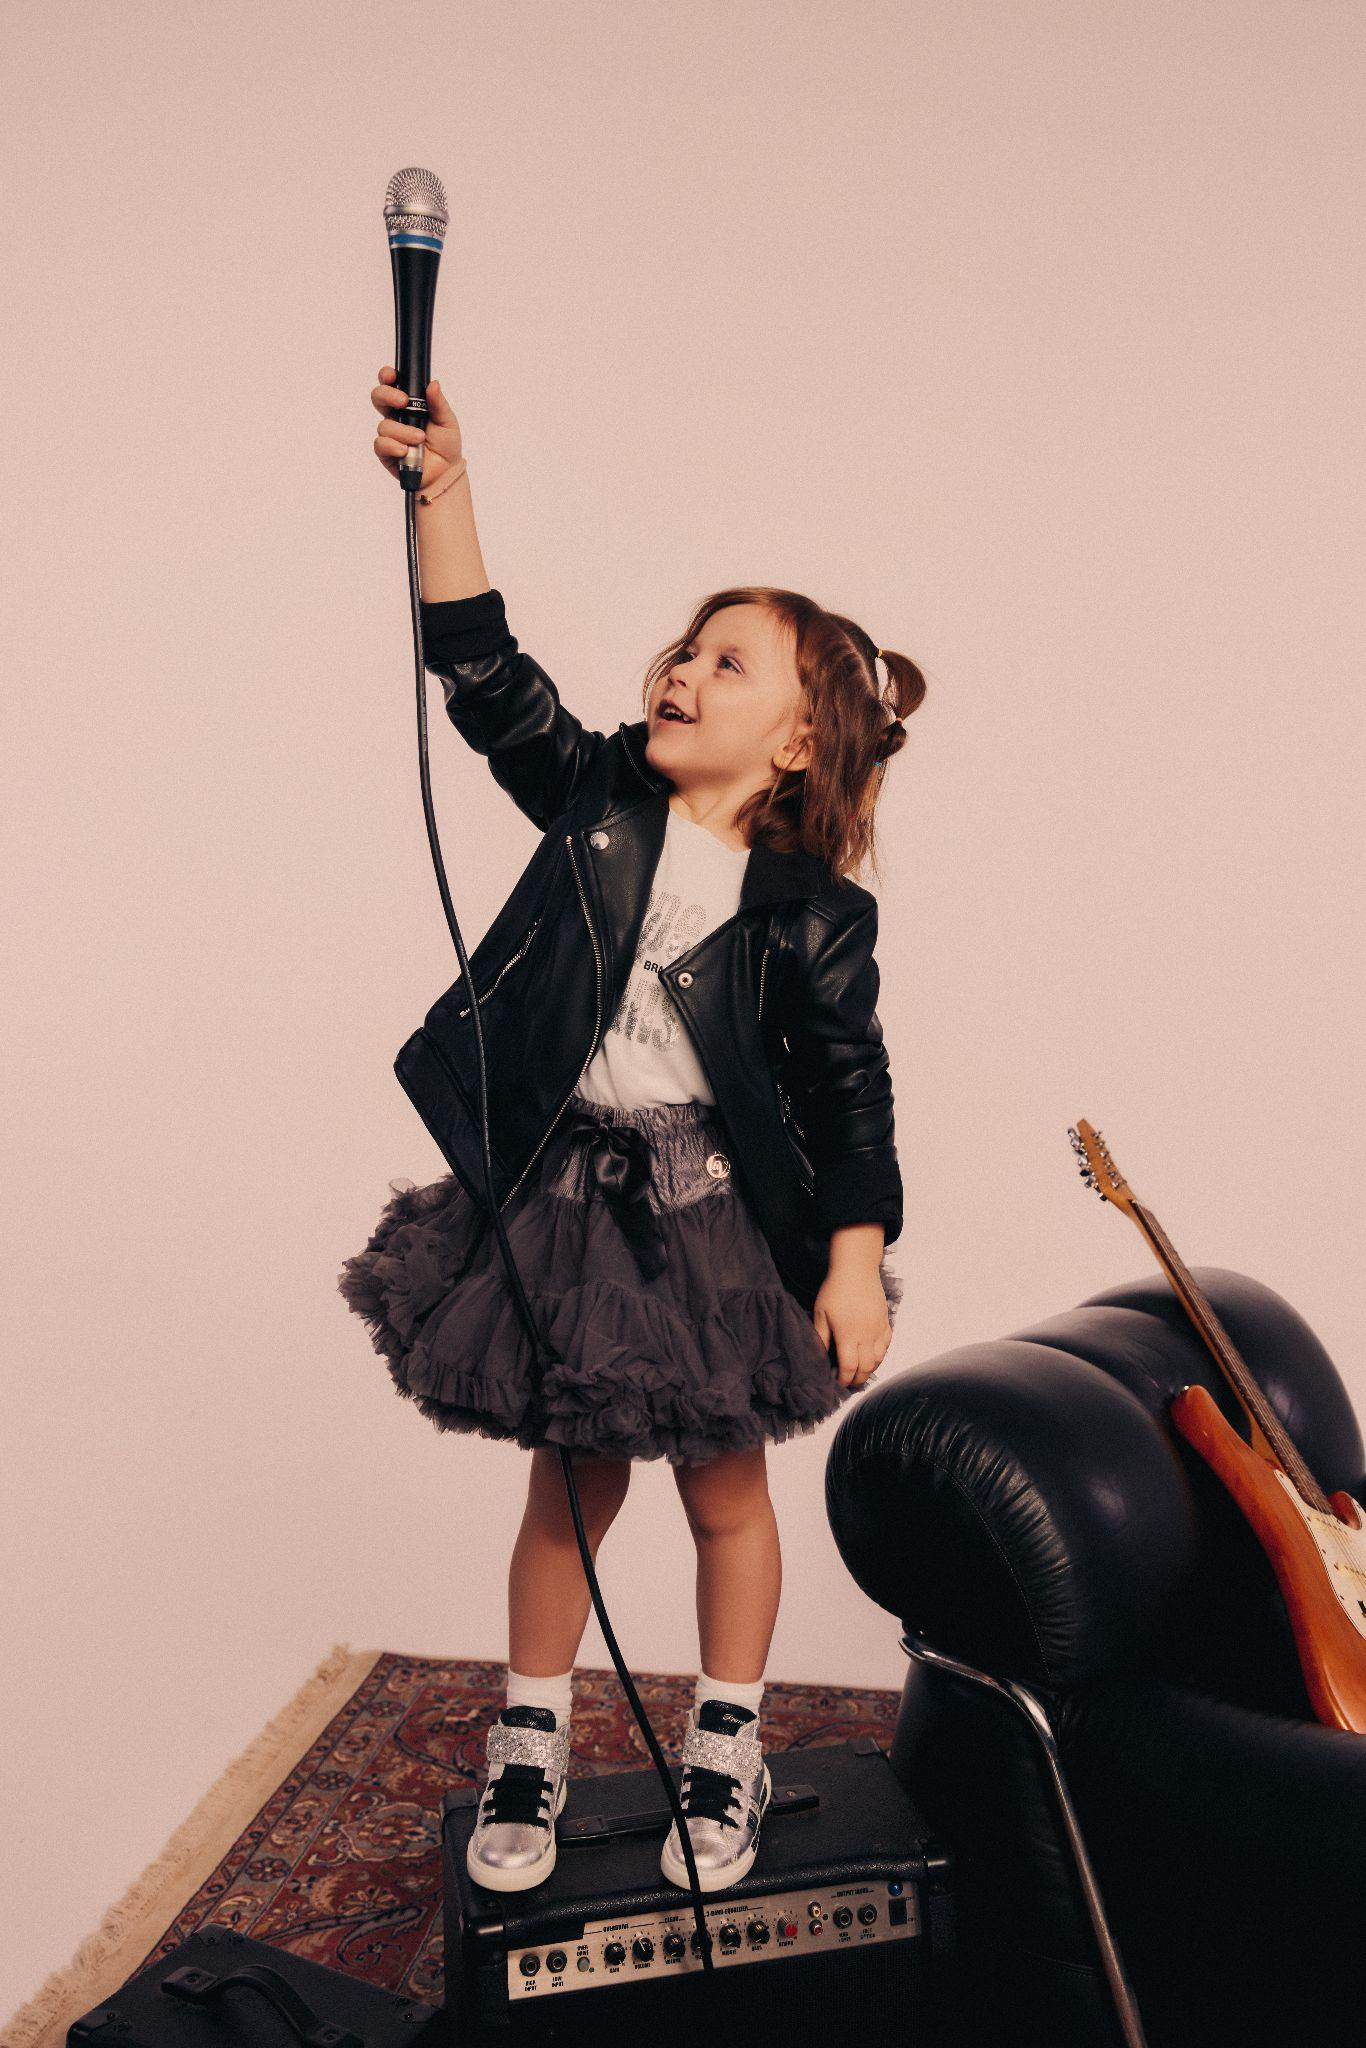 dziewczynka w rockowej stylizacji trzymająca mikrofon